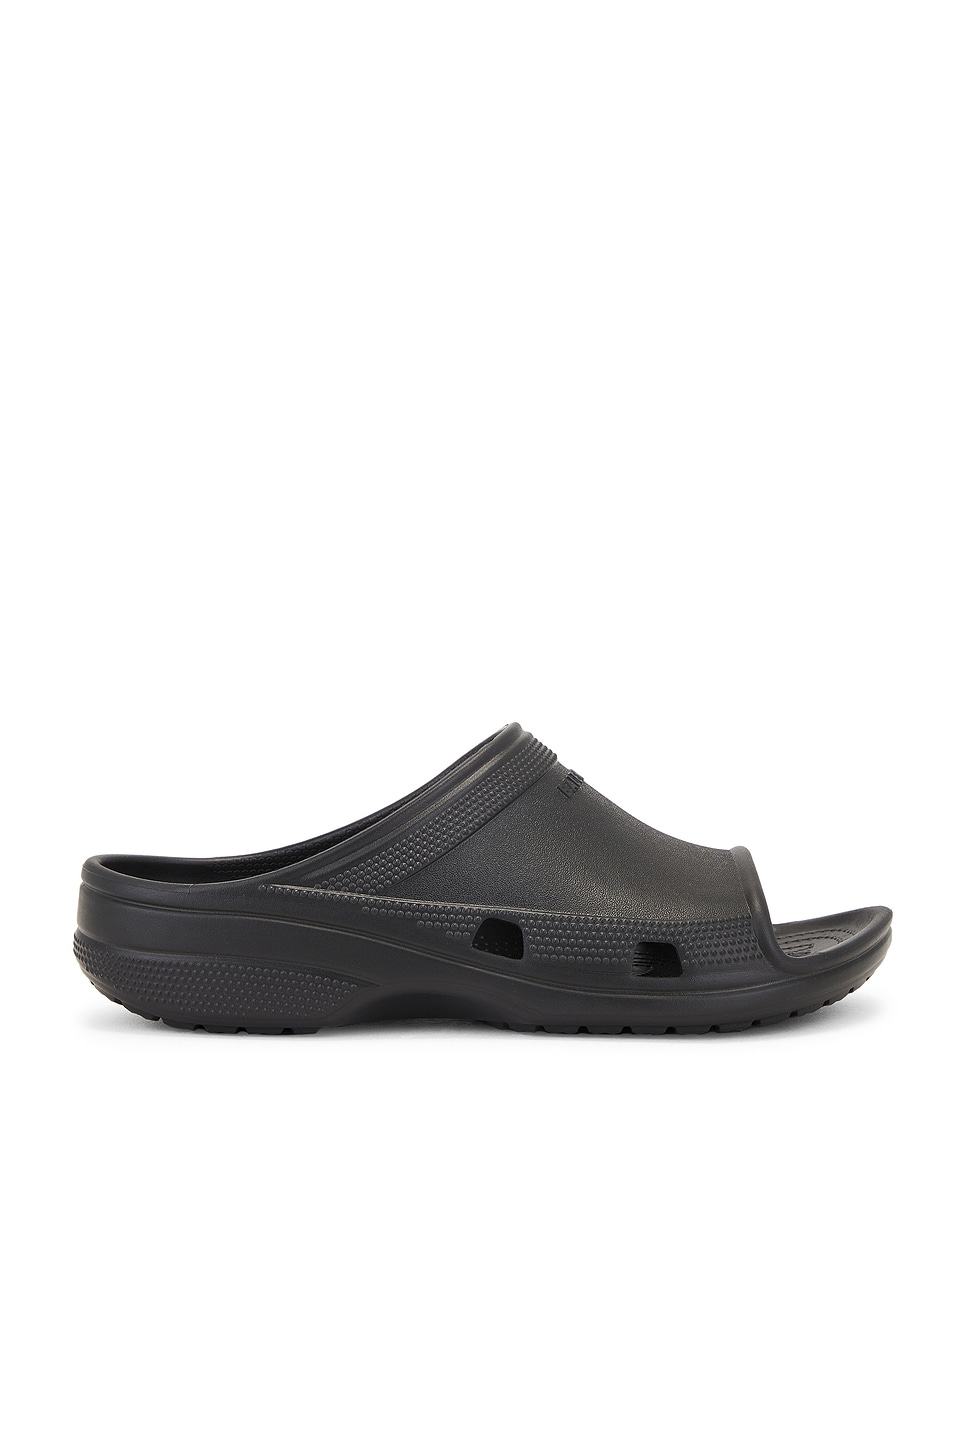 Pool Crocs Slide in Black